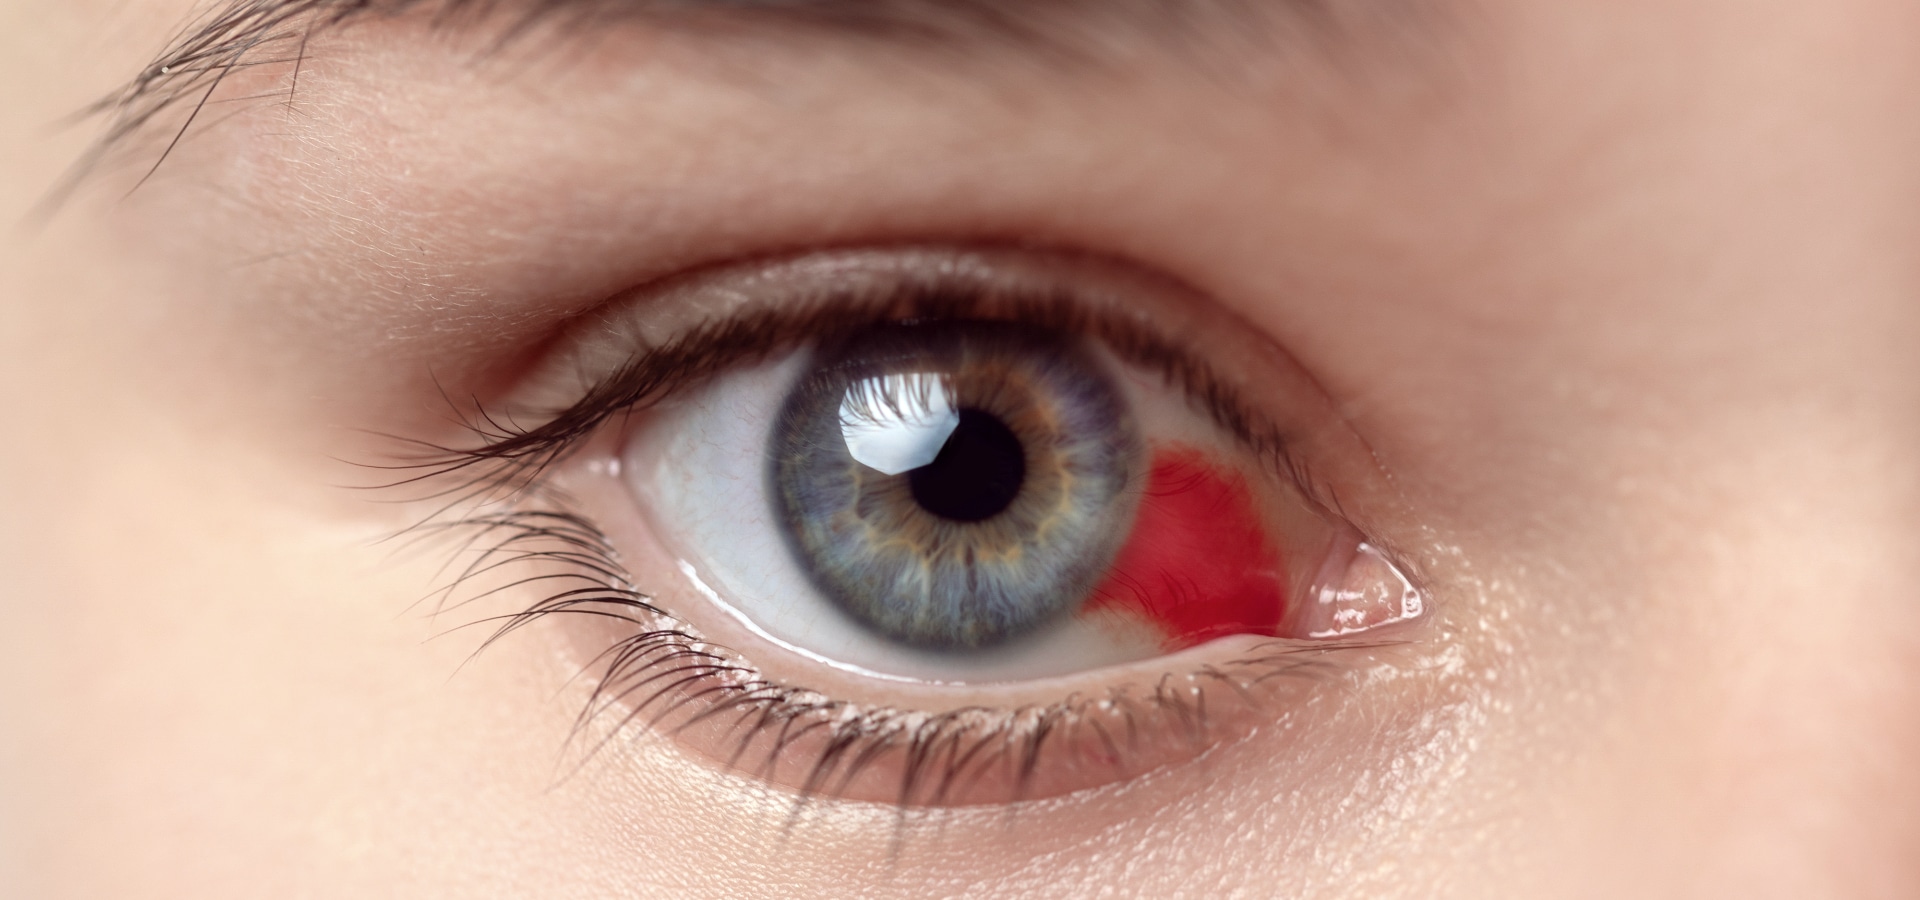 ¿Cómo saber si tienes la córnea dañada y cómo tratarla? » cornea del ojo dañada